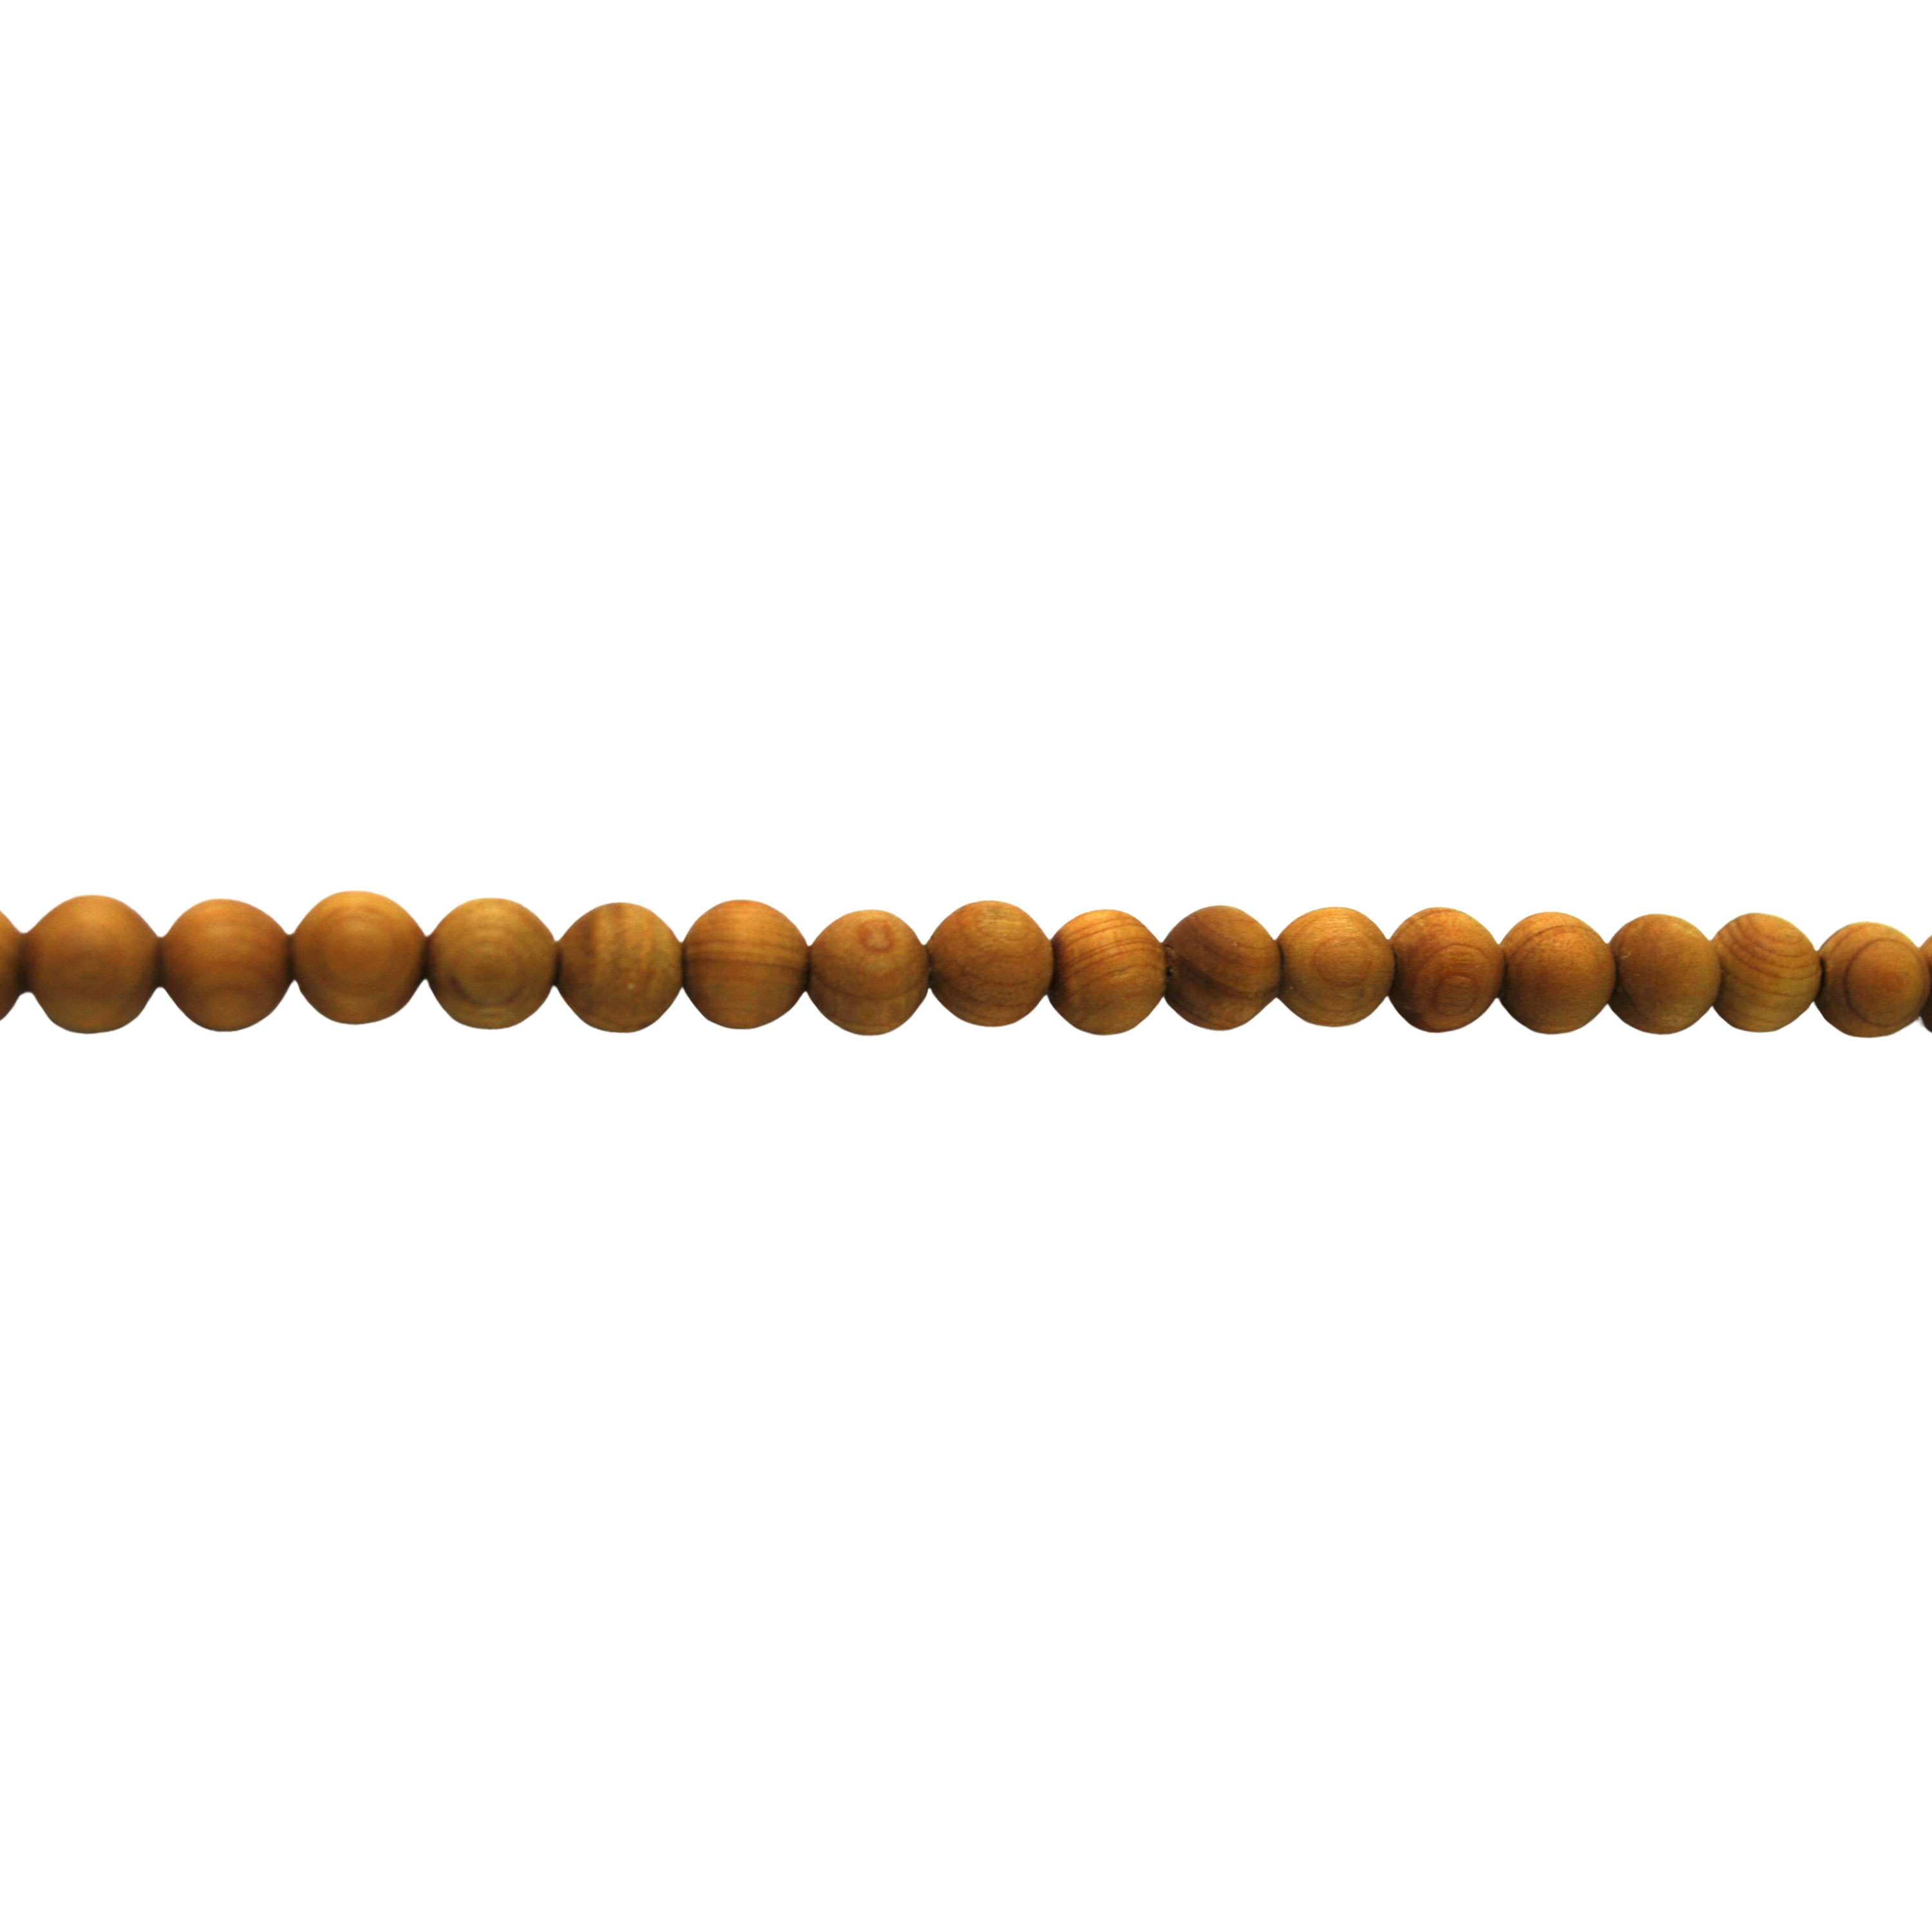 6mm Fragrant Sandalwood Beads - 26" Strand